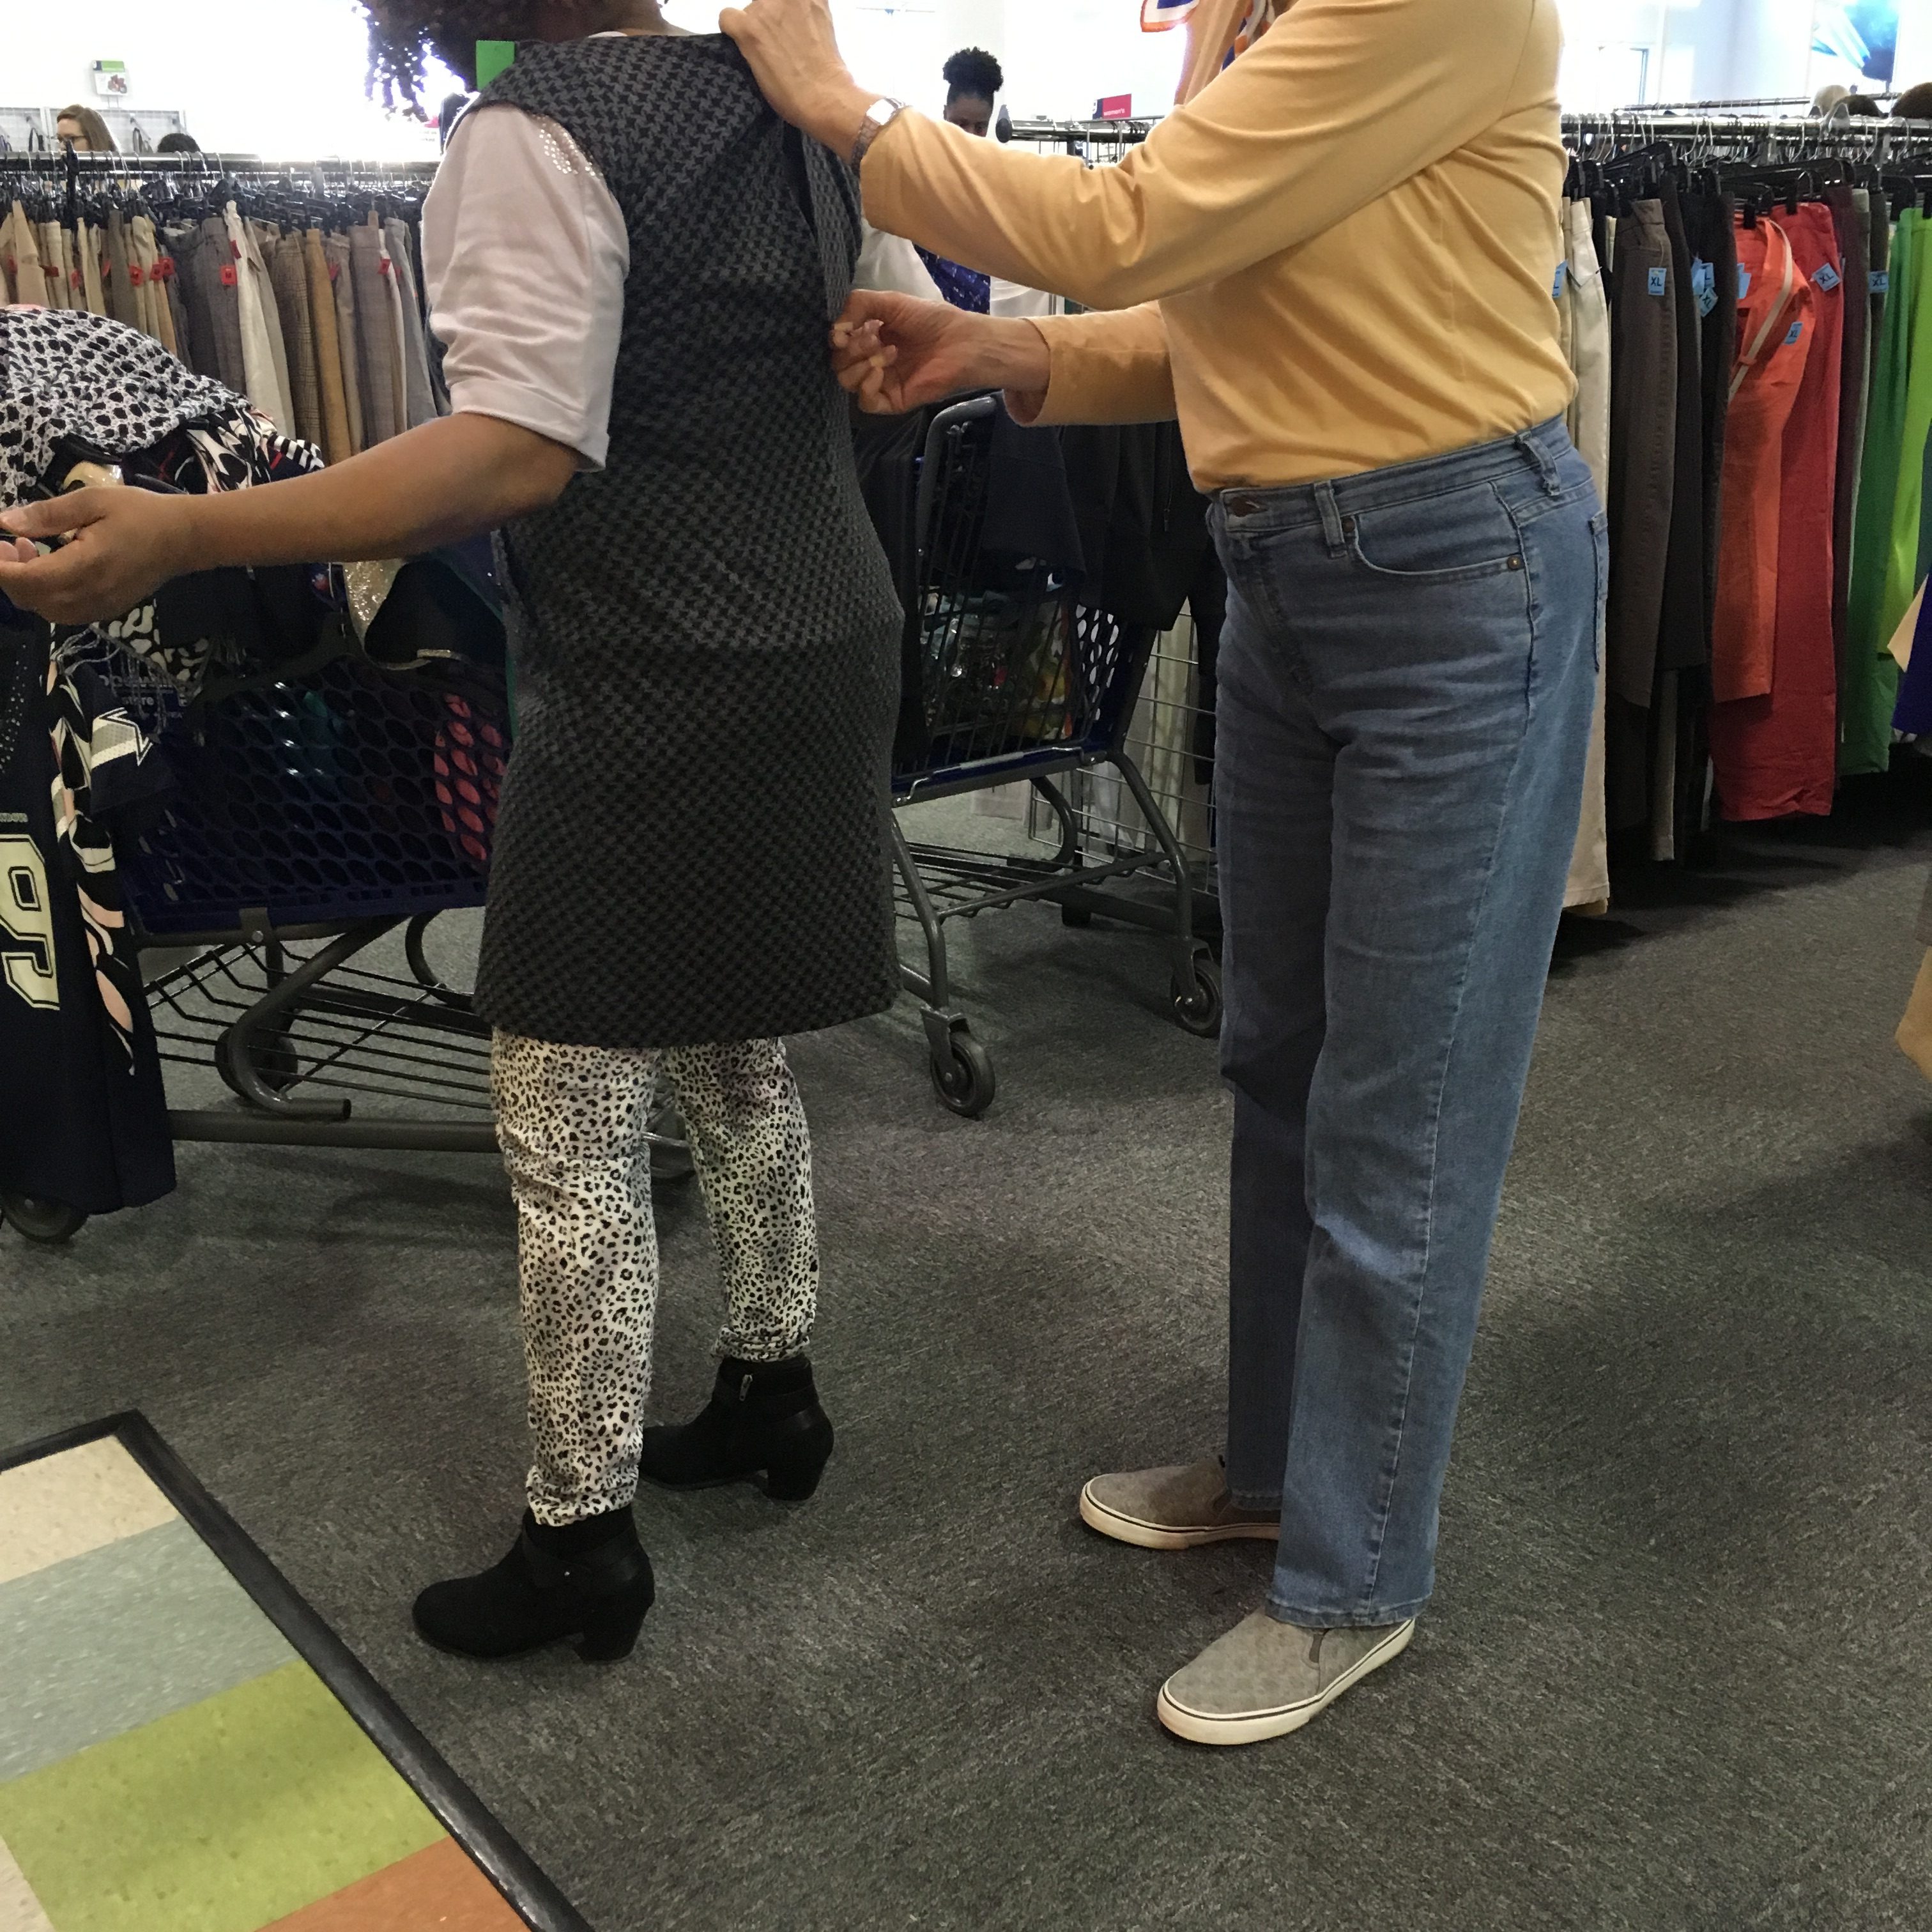 Goodwill shopper helping another Goodwill shopper zip dress